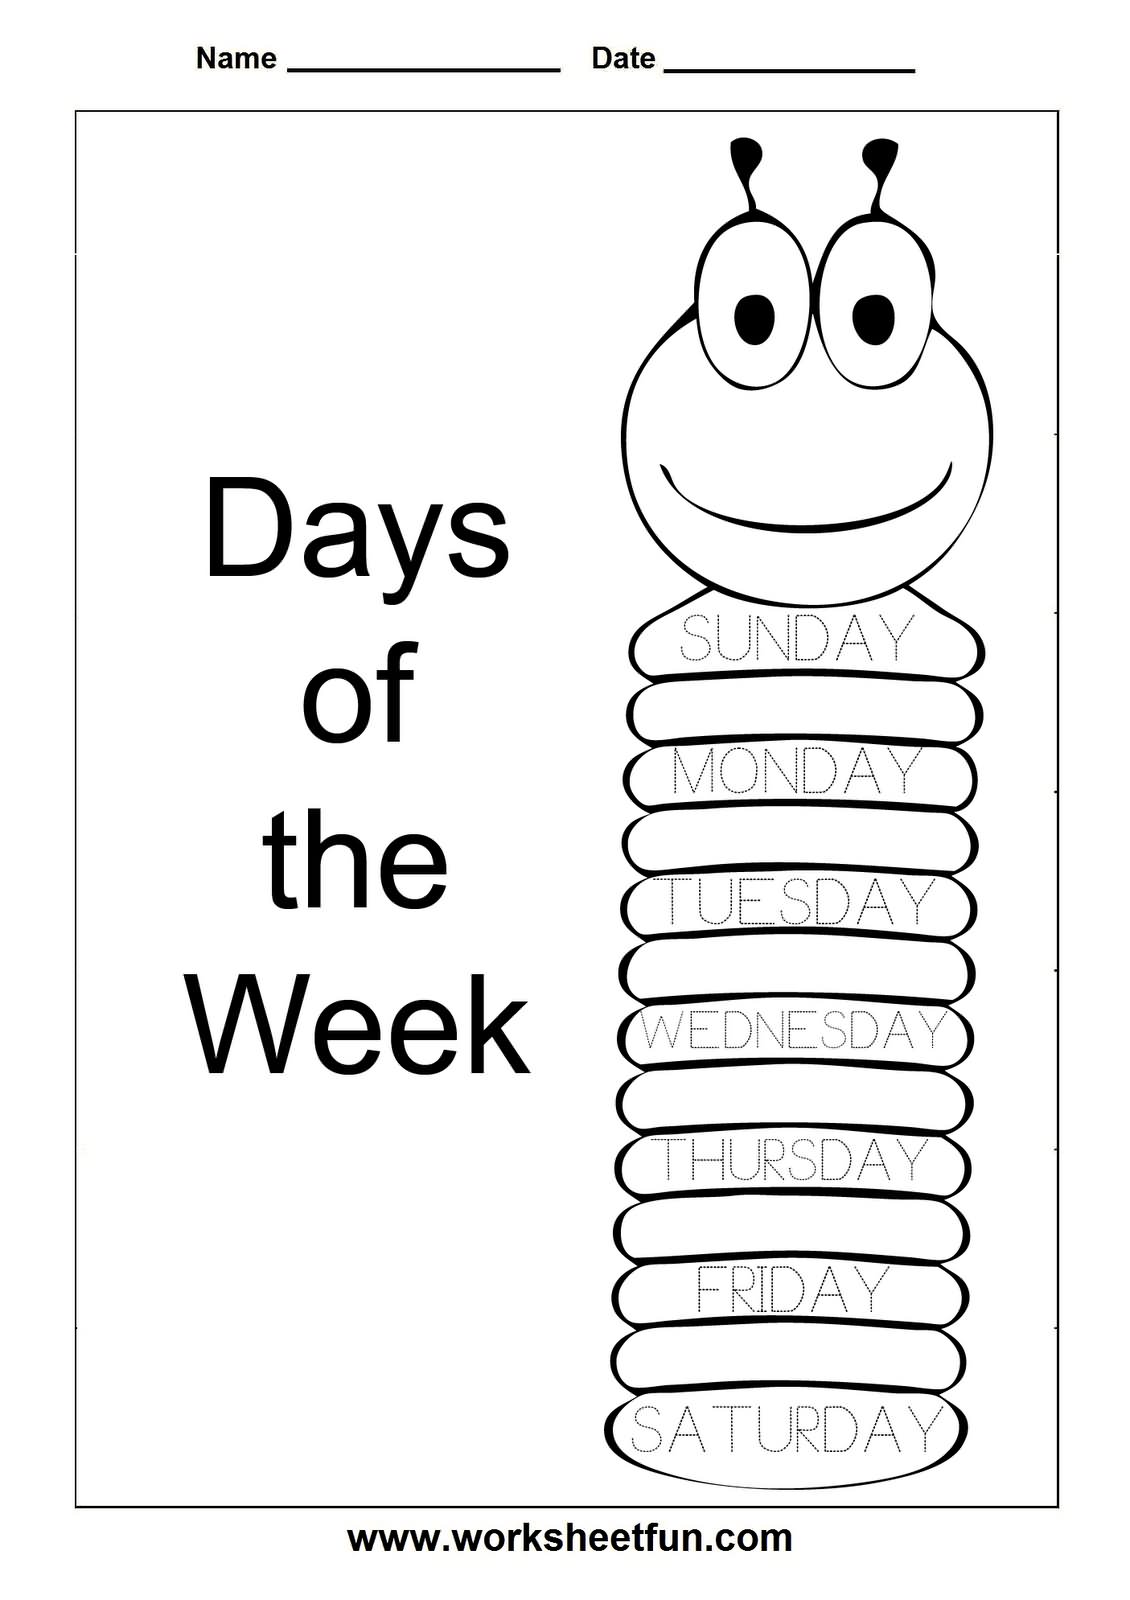 Days of the Week Worksheets Printable Image